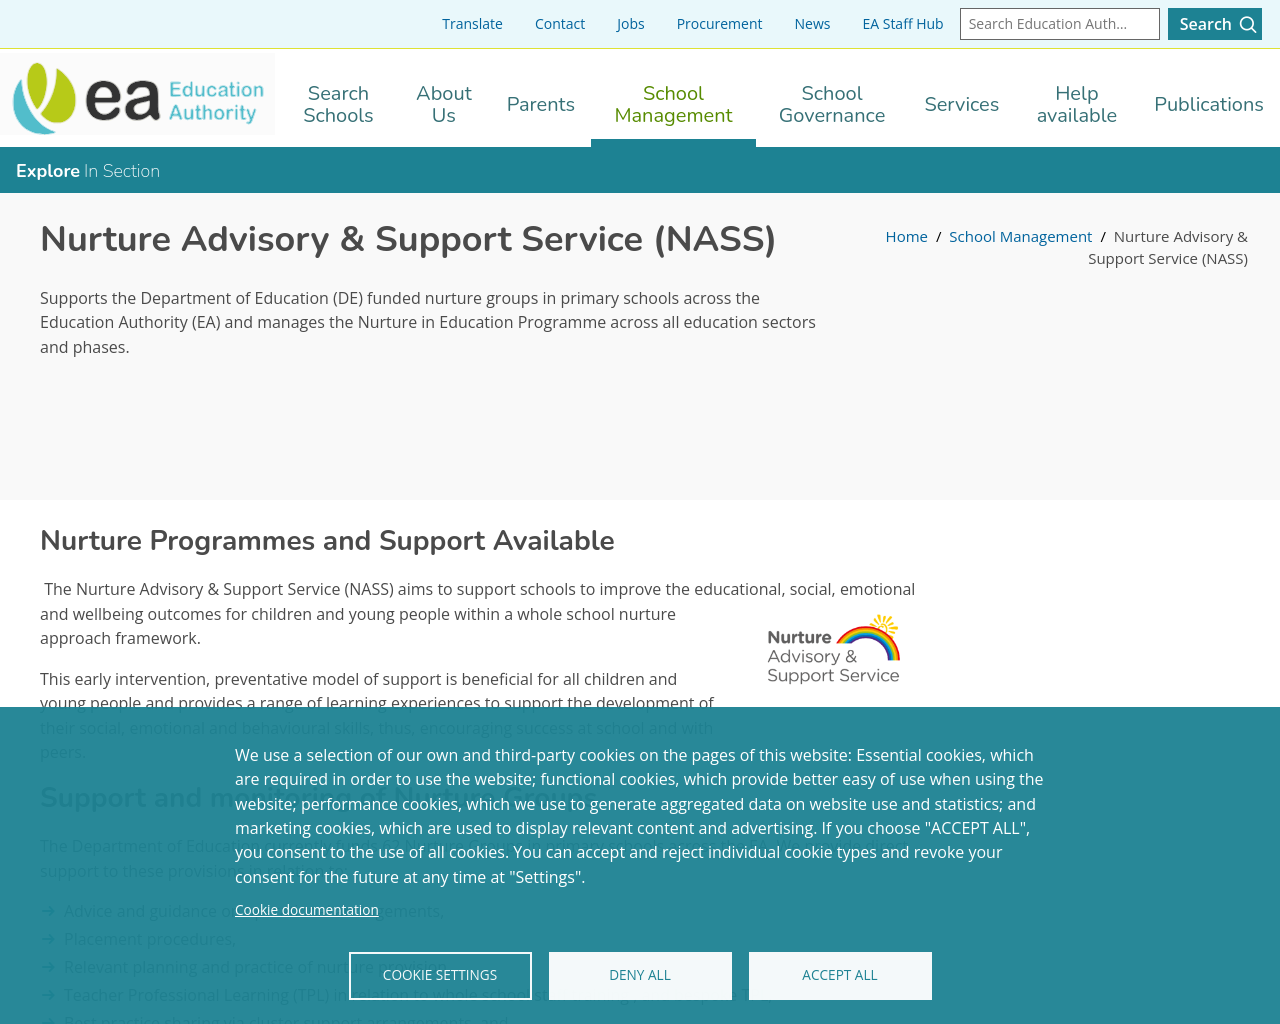 Nurture Advisory Support Service 